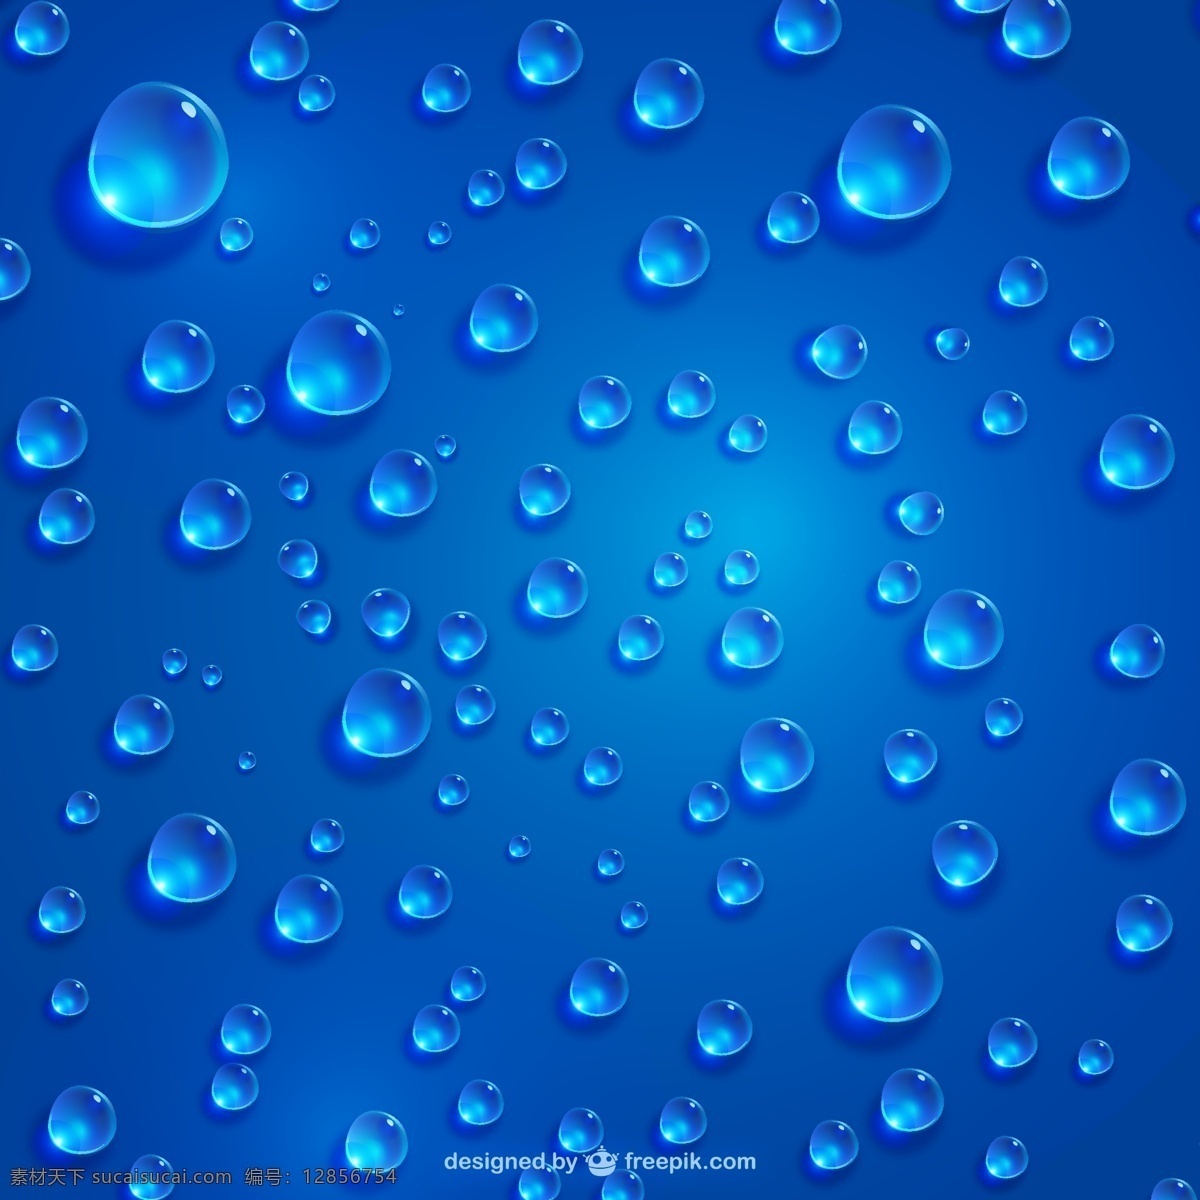 精美水珠 背景矢量 晶莹 水滴 蓝色 透明 雨滴 蓝色背景